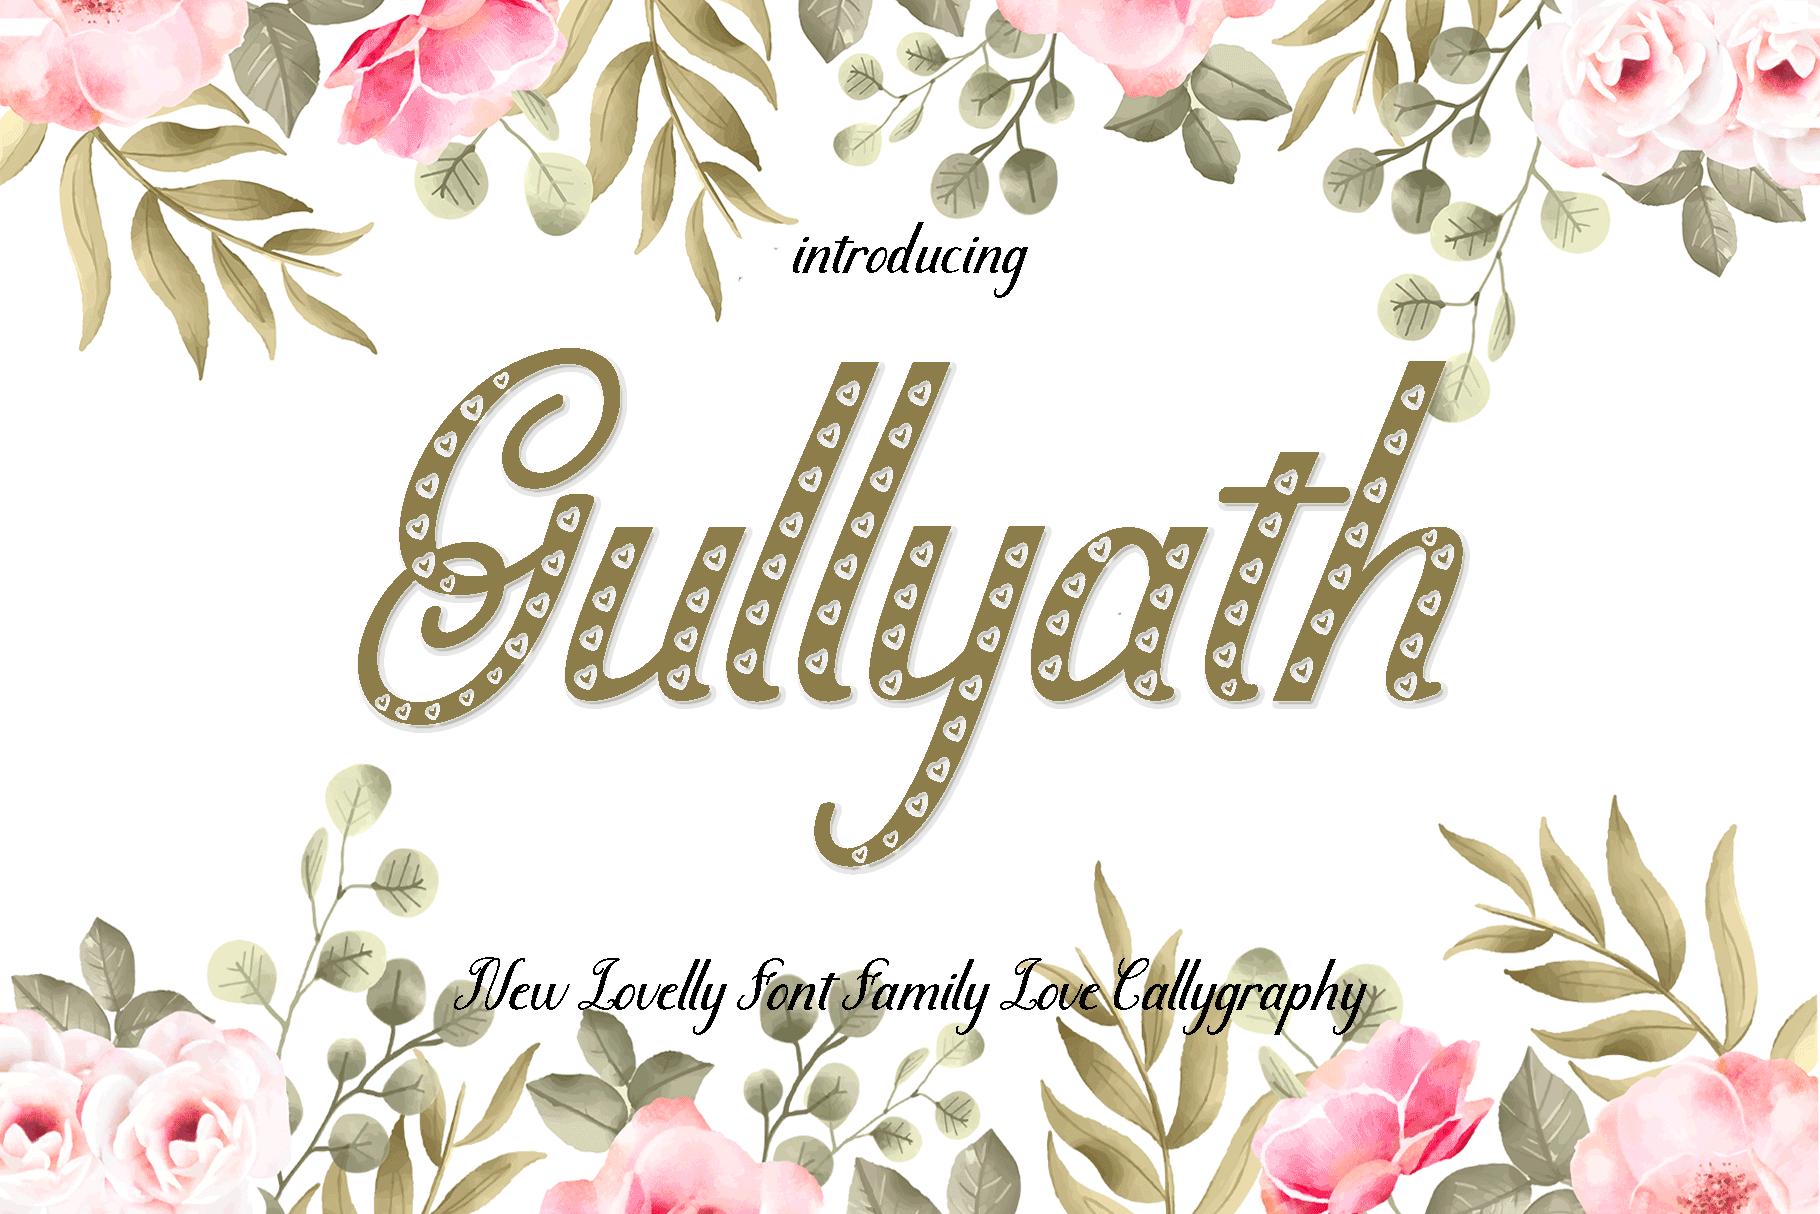 Gullyath Font